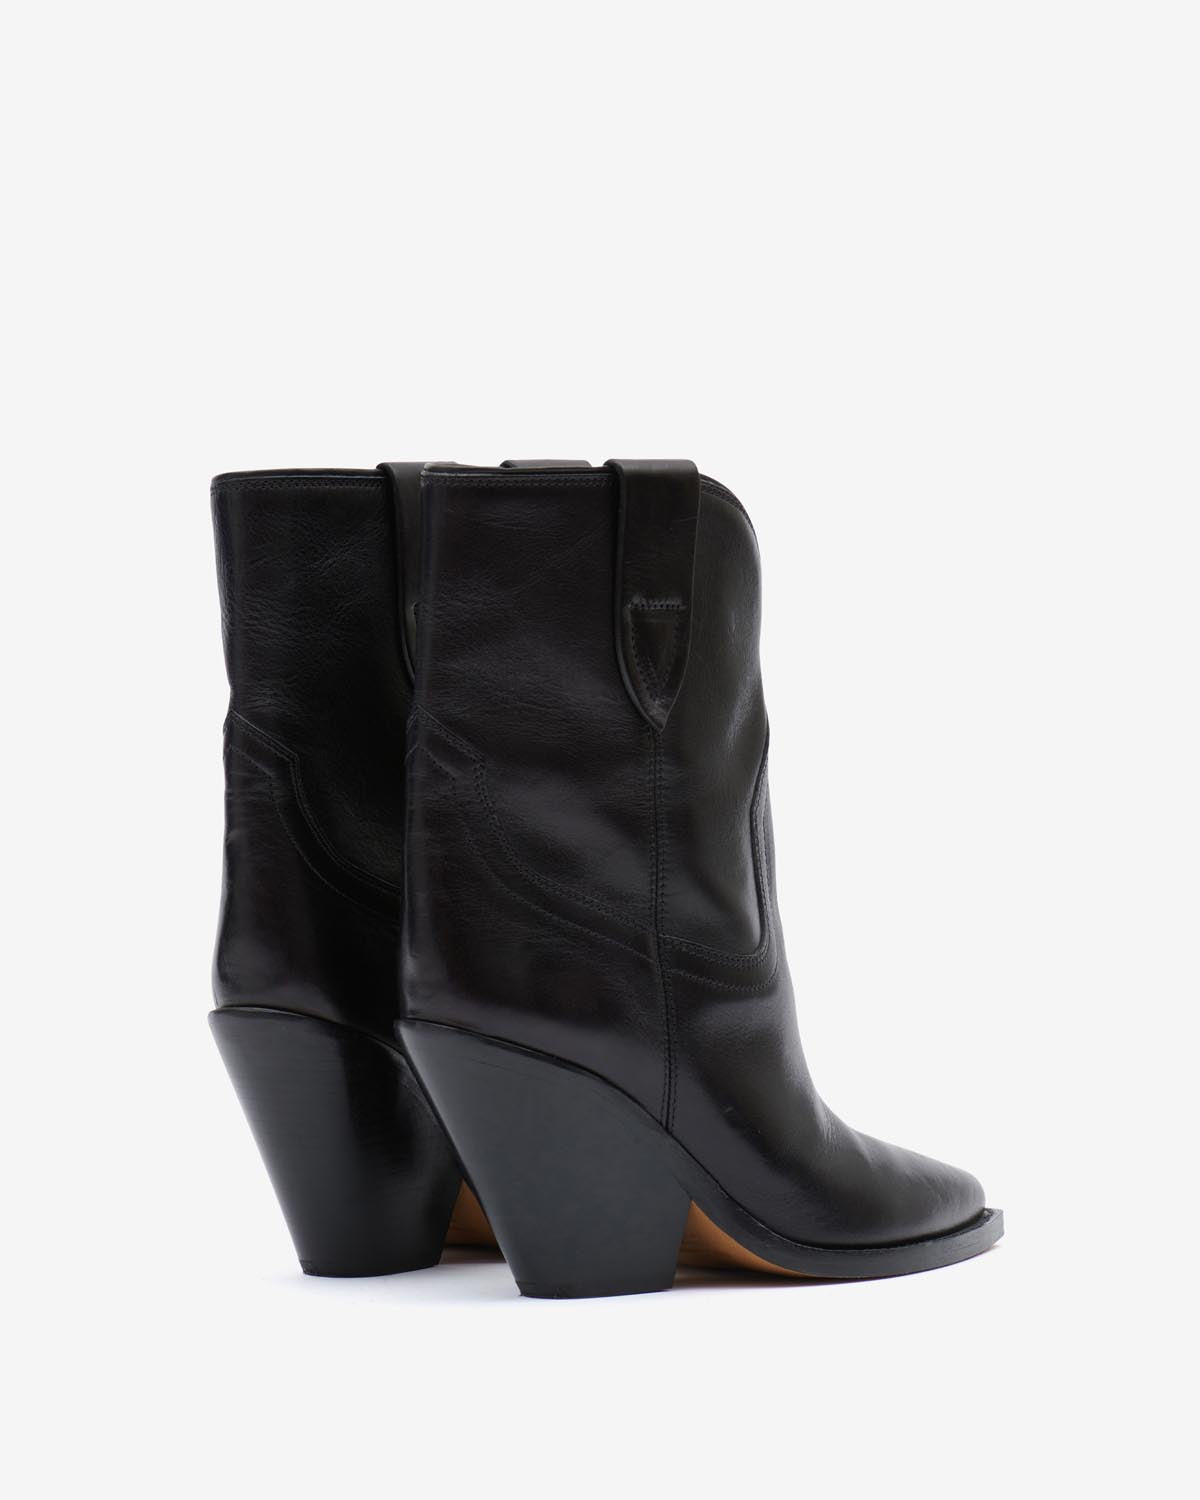 Boots leyane Woman Noir 2